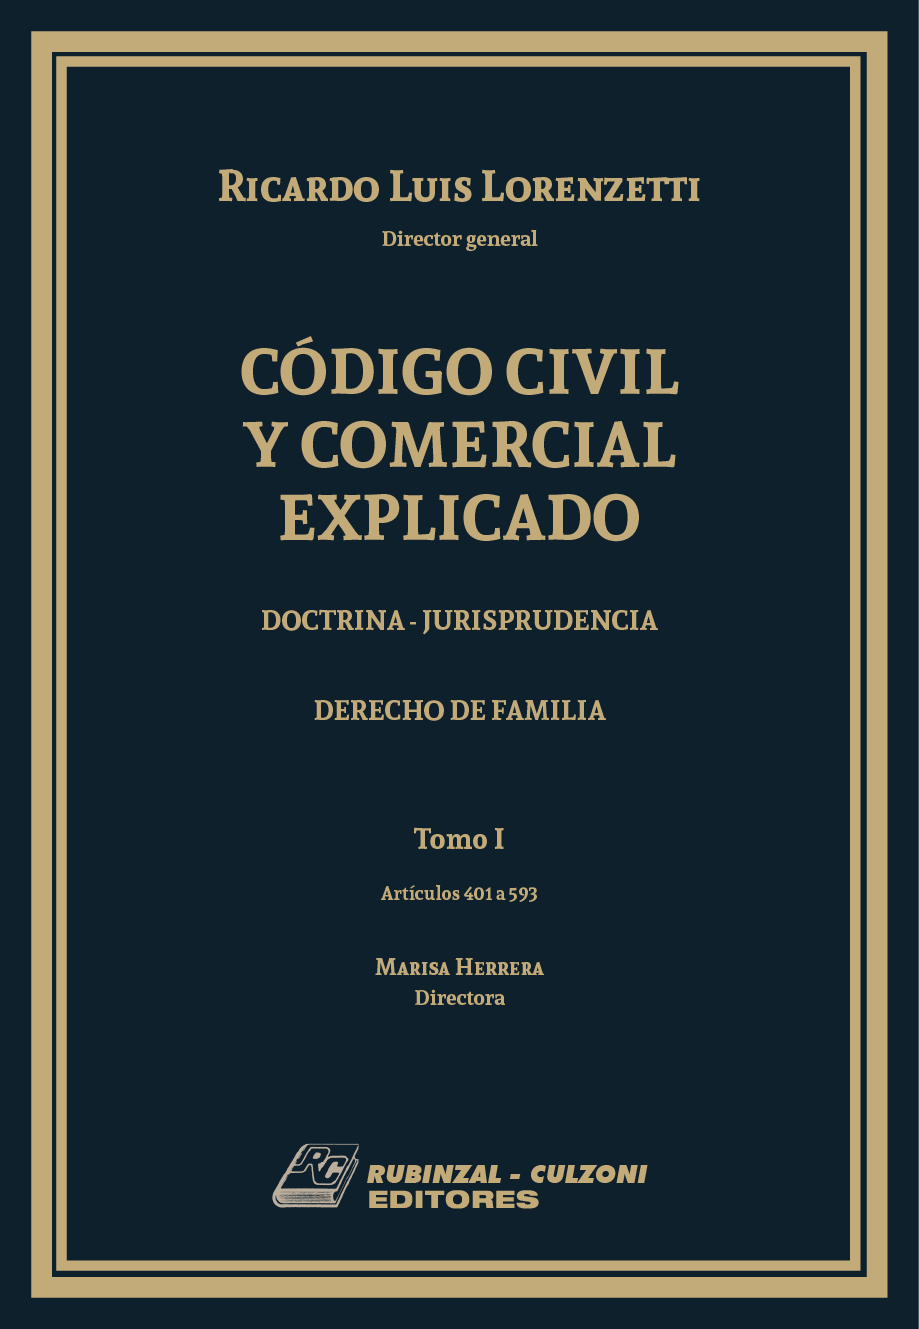 Código Civil y Comercial Explicado. Doctrina - Jurisprudencia - Libro II : Derecho de Familia (Arts. 401 - 593) Tomo 1 - (576 Págs)